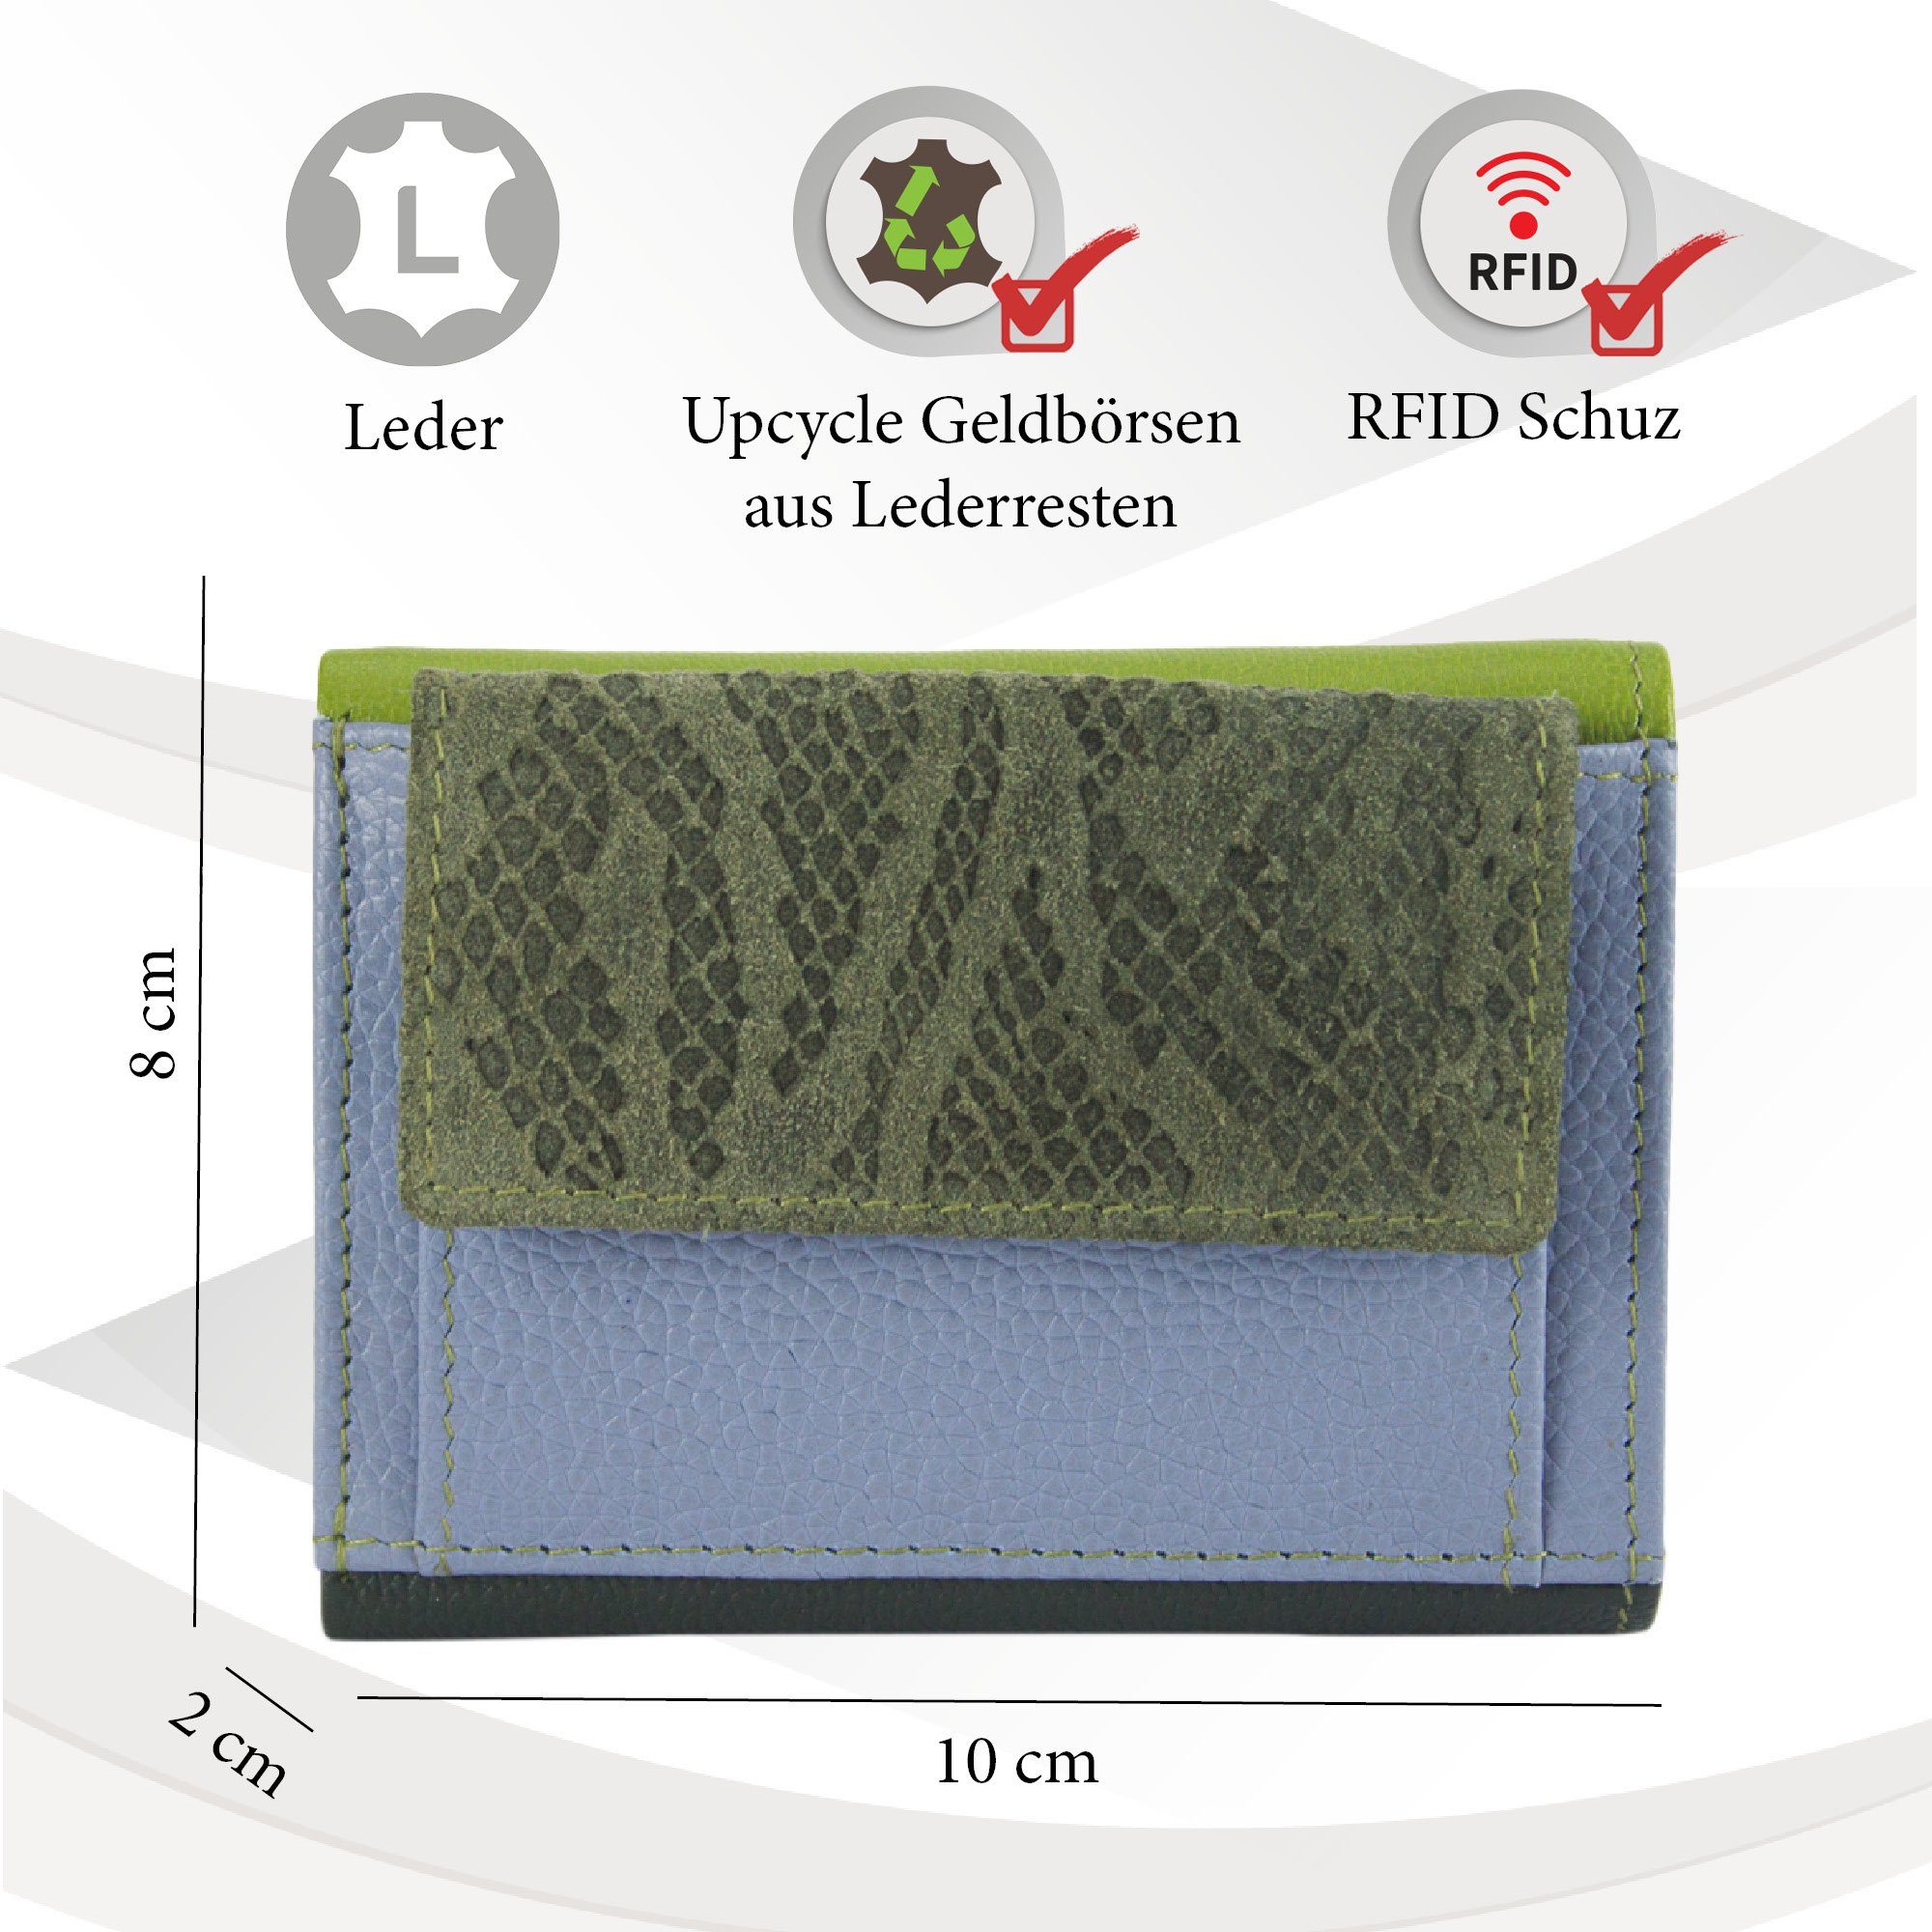 Sunsa Khakigrün/hell klein Geldbeutel Mini RFID-Schutz, Leder, Geldbörse Brieftasche, echt recycelten mit Lederresten, grün blau/kiwi Mini aus Leder Unisex Portemonnaie Geldbörse